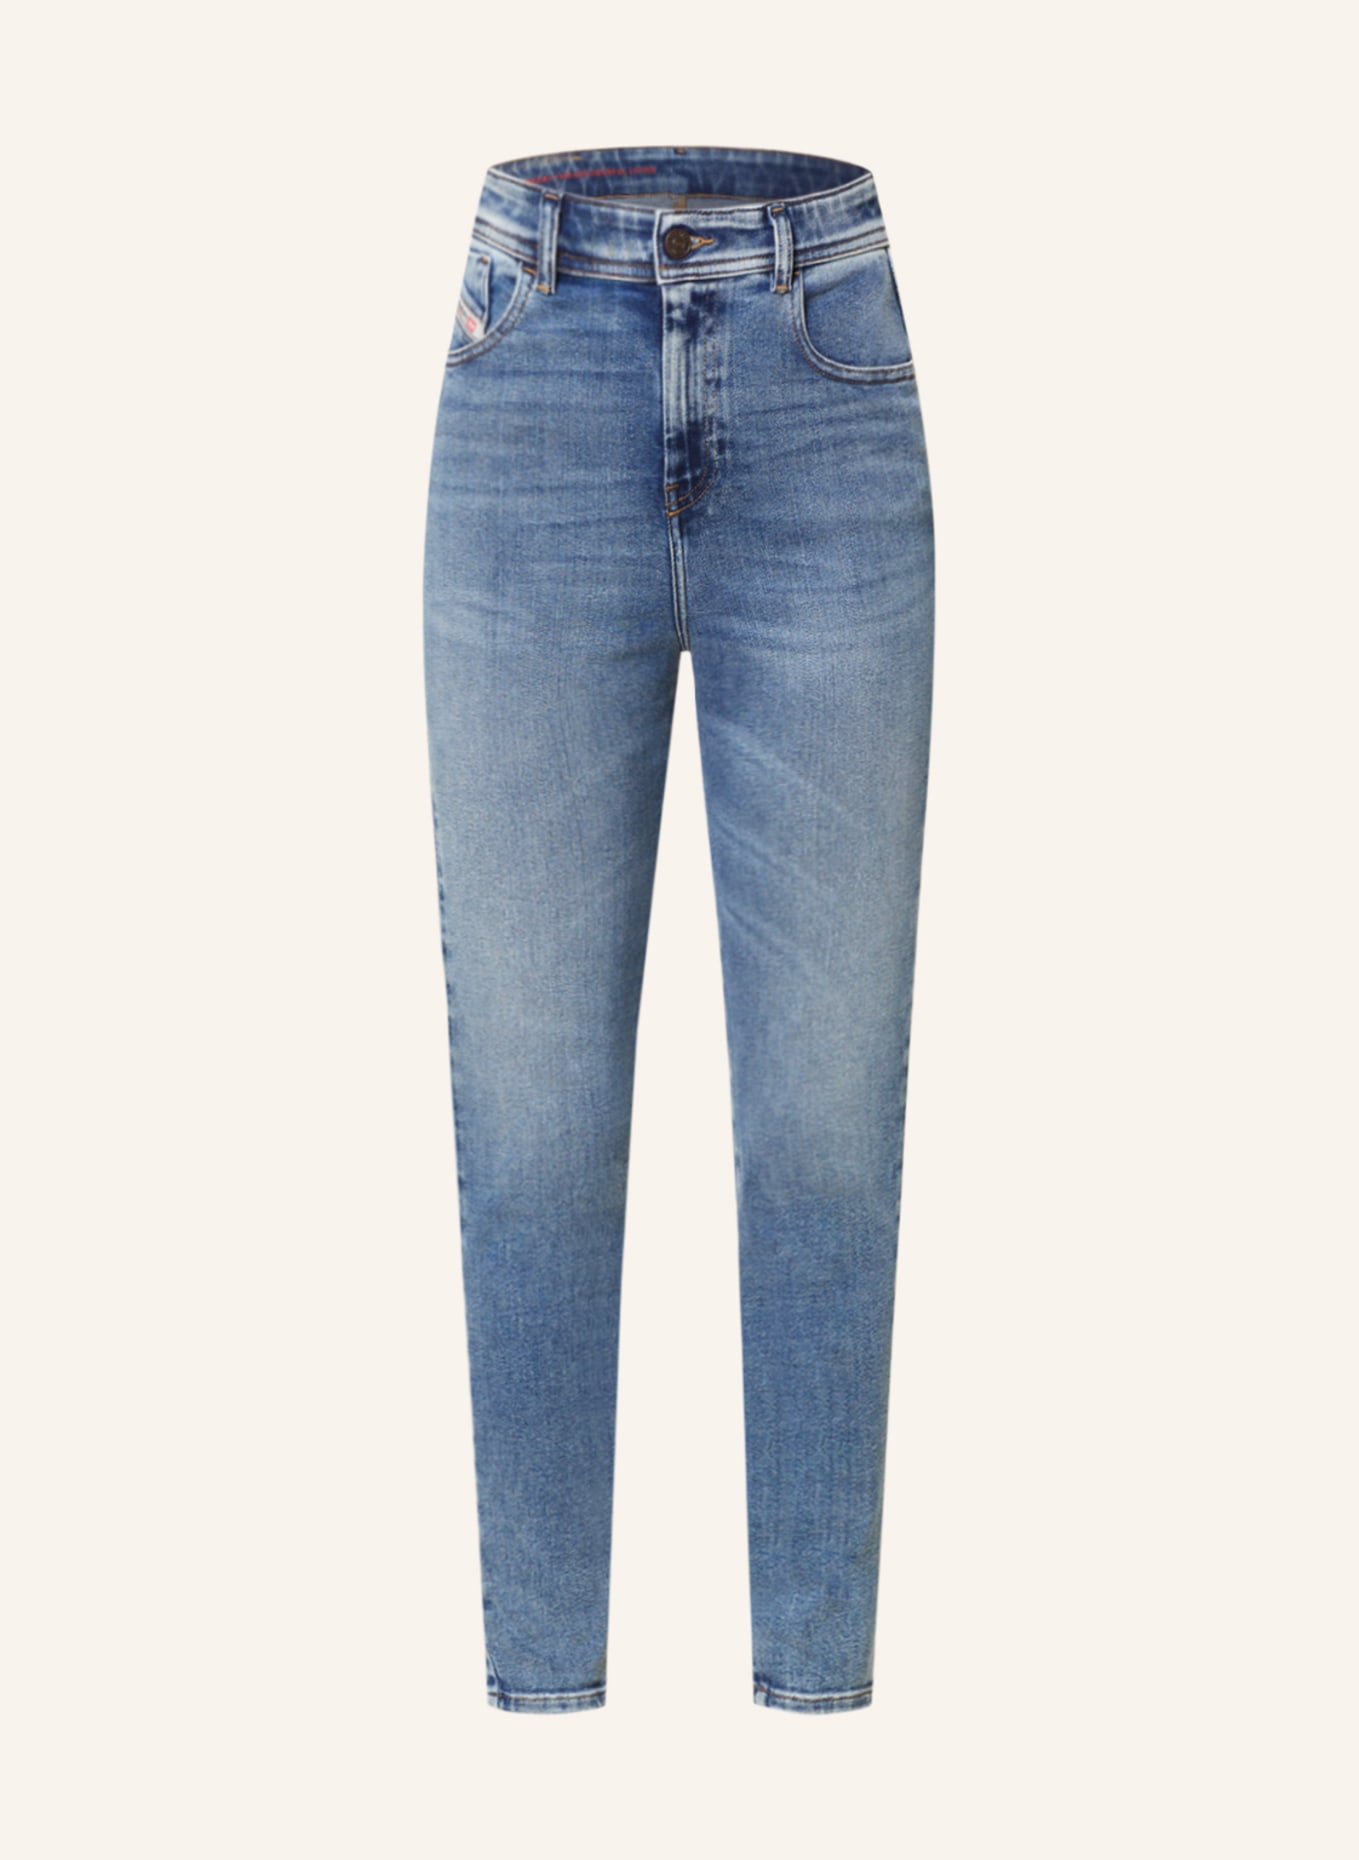 DIESEL Skinny Jeans 1984 SLANDY, Farbe: 01 DENIM (Bild 1)